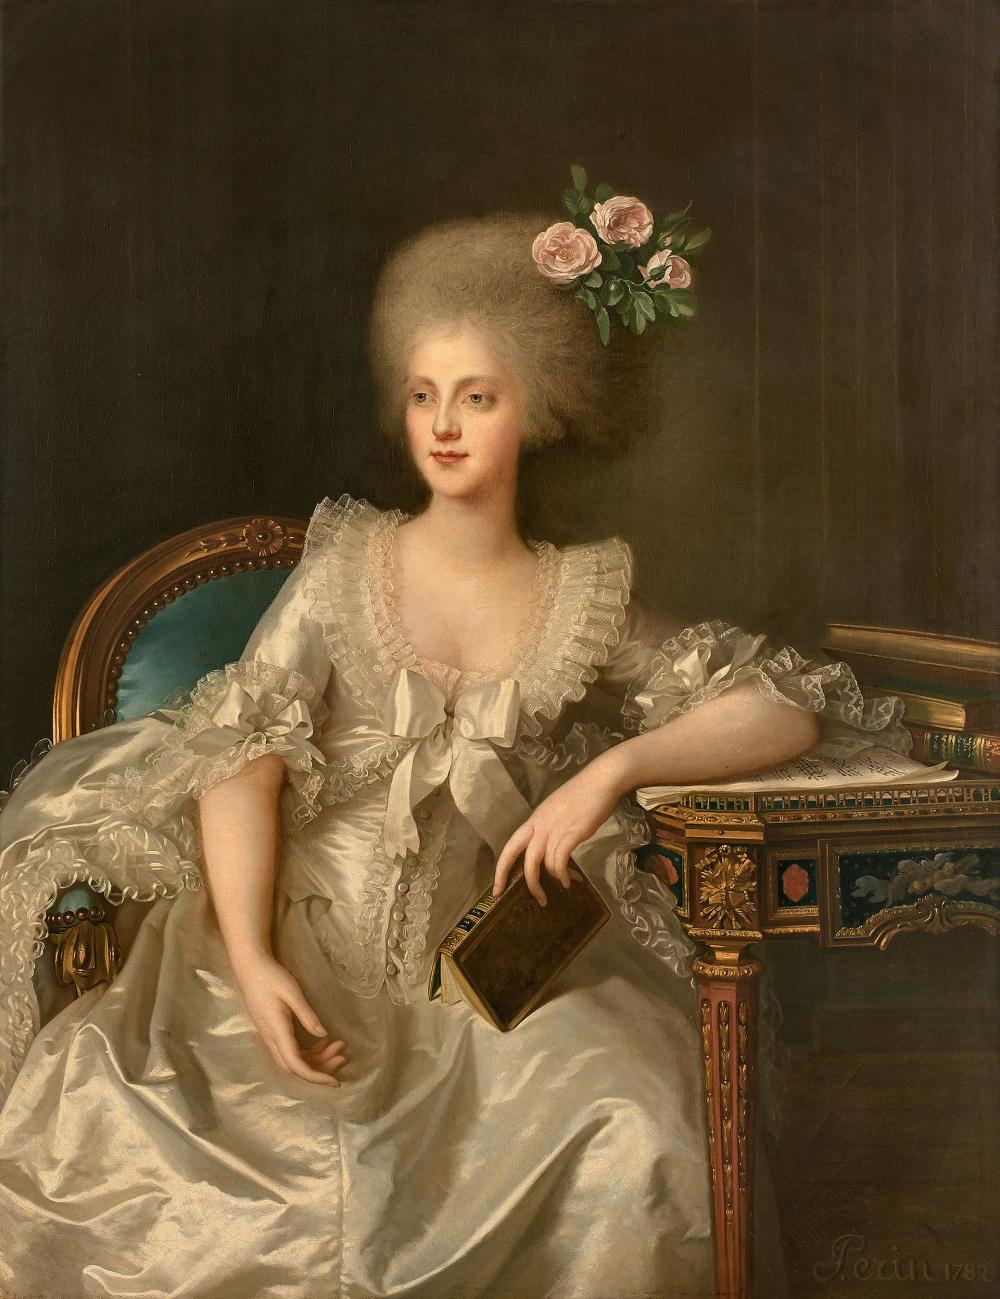 Portraits de Marie-Caroline d'Autriche, reine de Naples et de Sicile - Page 5 H1118-10